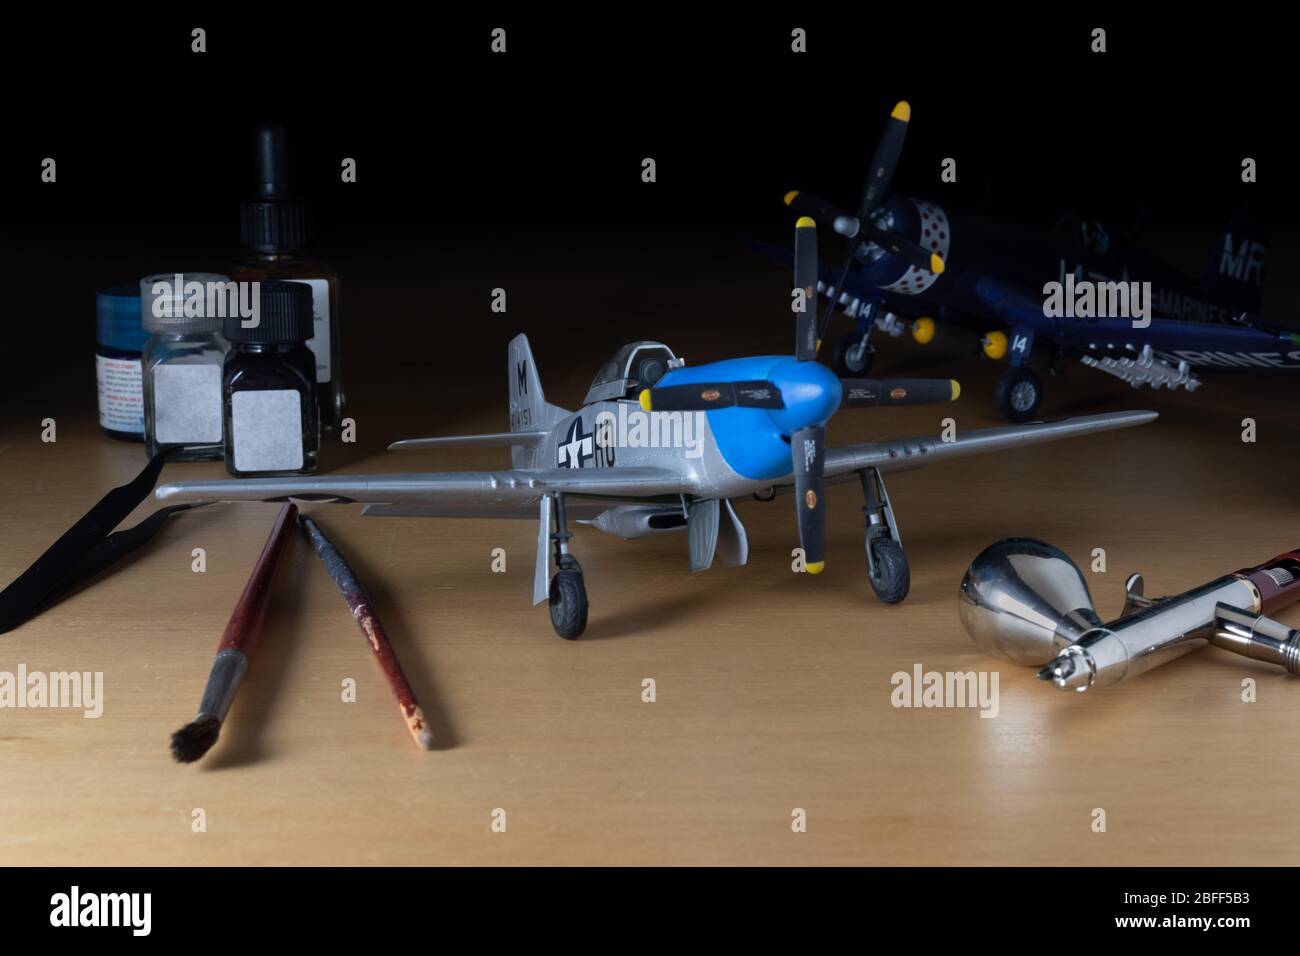 Figurines d'aéronefs et d'échelle représentation de kits de modélisation par passe-temps avec outils. Modèle P-51, brosses, peinture et aérographe. Banque D'Images